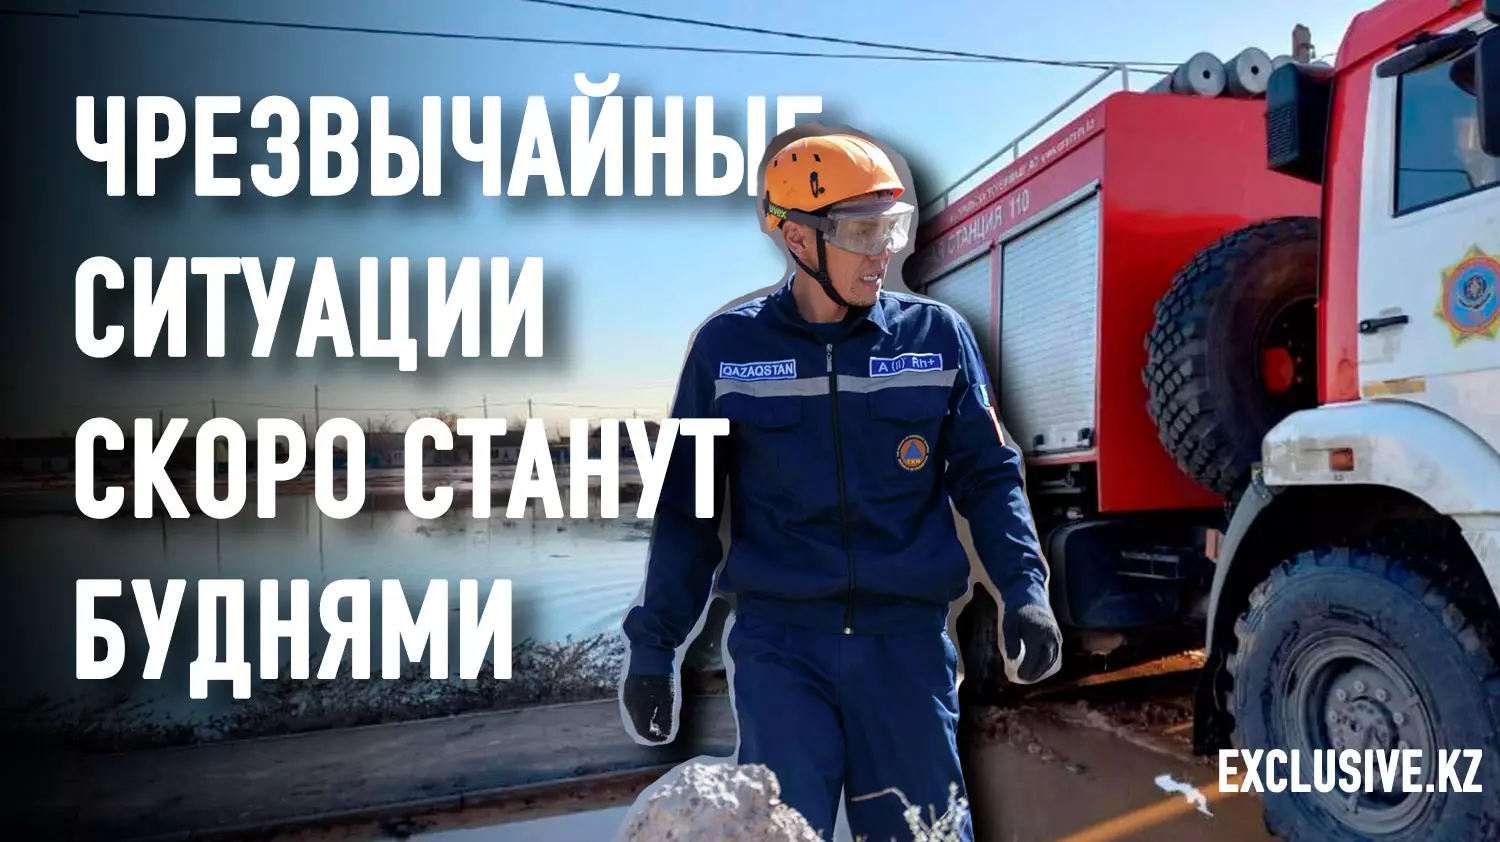 Сегодняшний кризис госуправления – мина, заложенная Назарбаевым